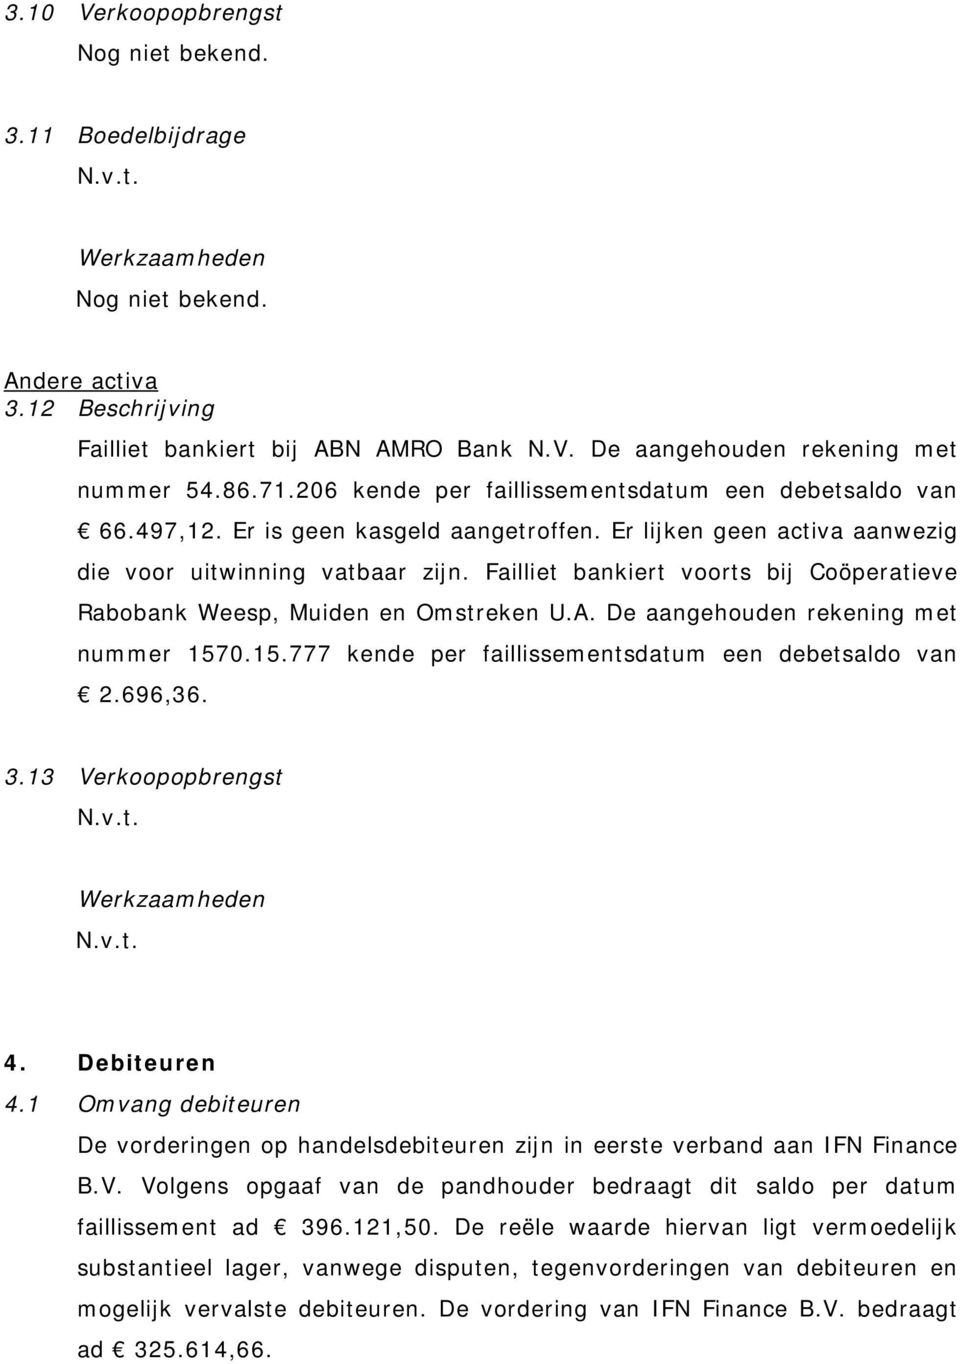 Failliet bankiert voorts bij Coöperatieve Rabobank Weesp, Muiden en Omstreken U.A. De aangehouden rekening met nummer 1570.15.777 kende per faillissementsdatum een debetsaldo van 2.696,36. 3.